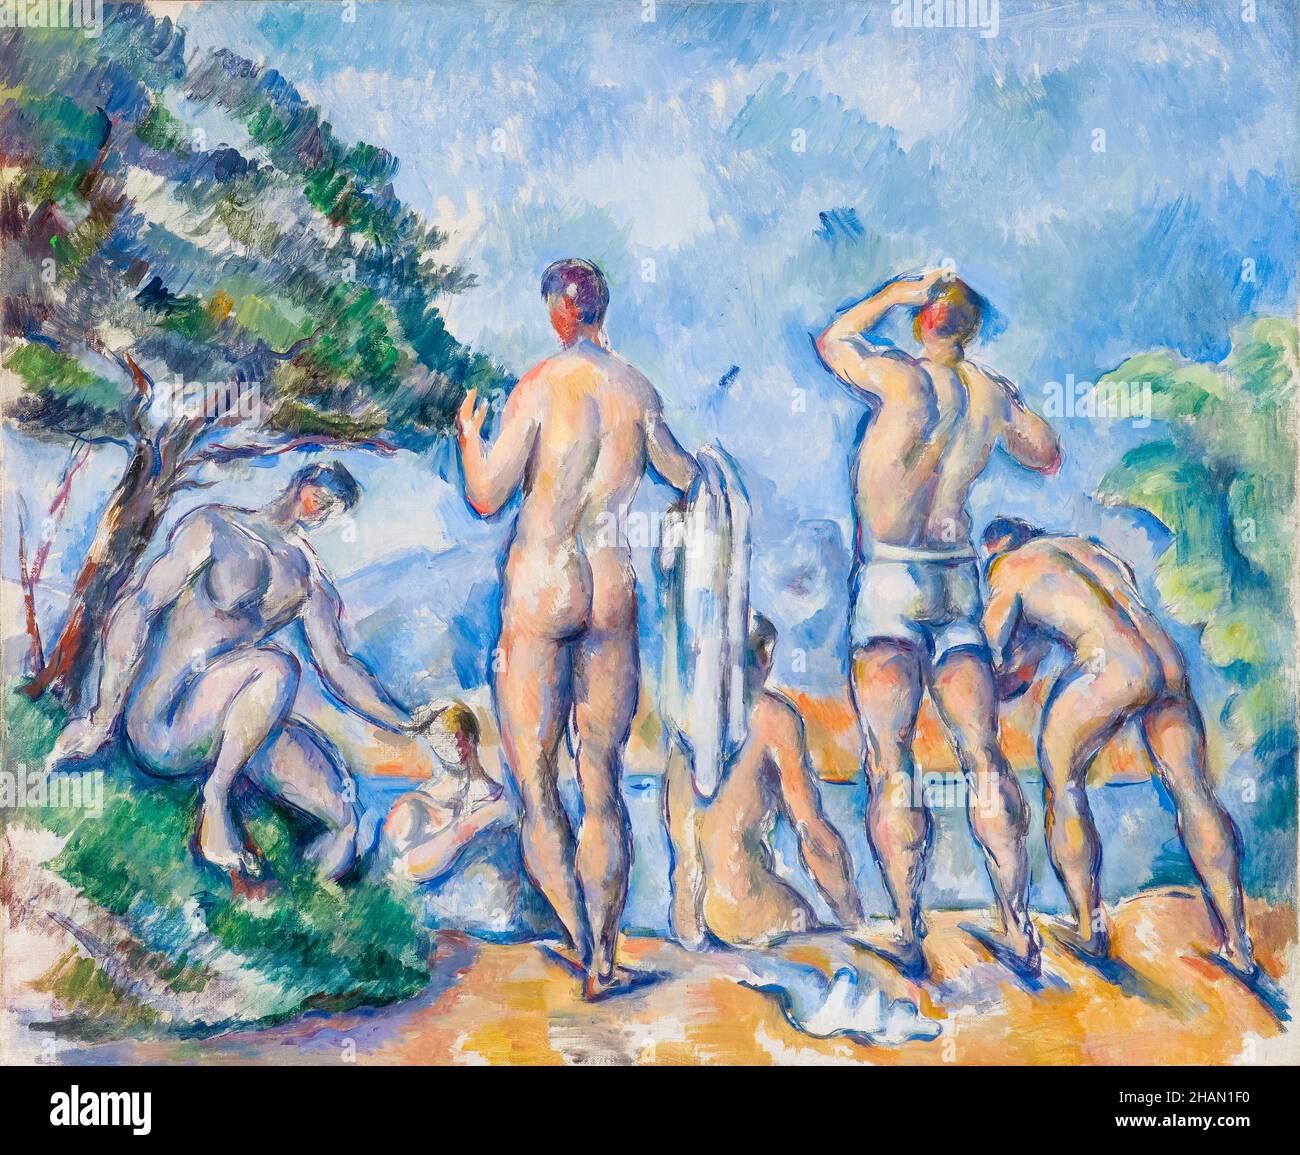 Paul Cézanne, baigneurs, peinture, 1890-1892 Banque D'Images